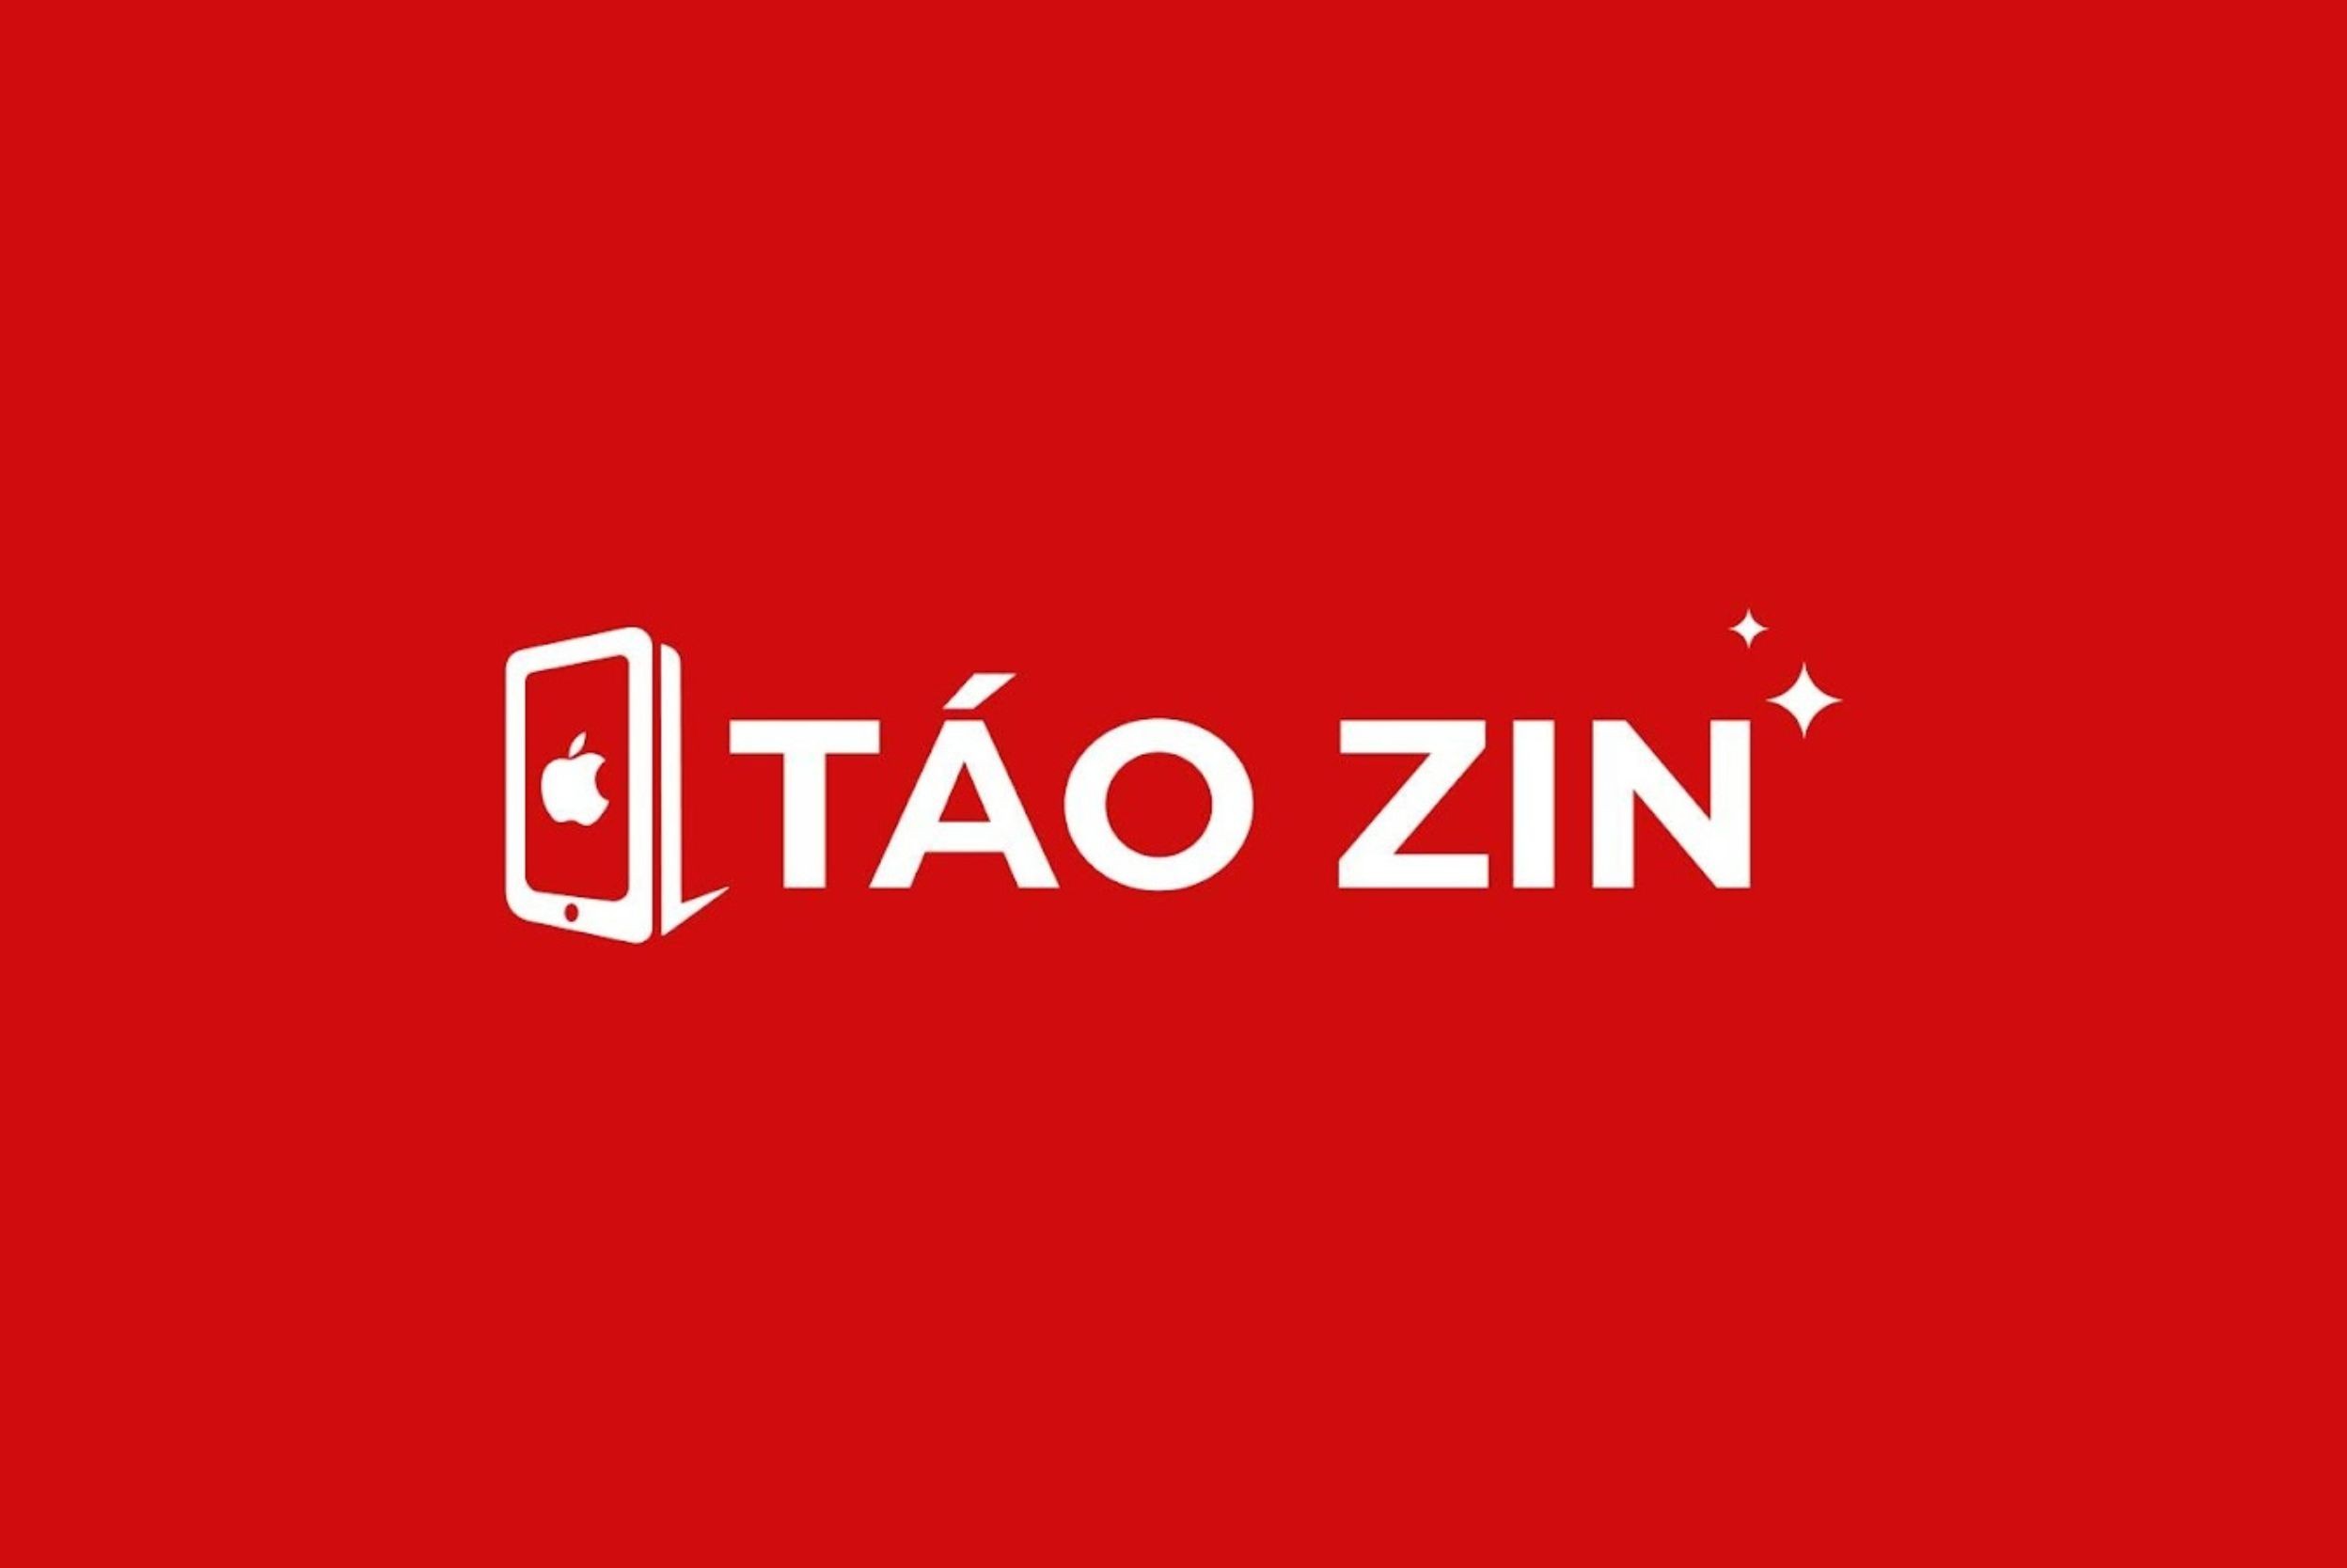 tao-zin-sai-gon-logo